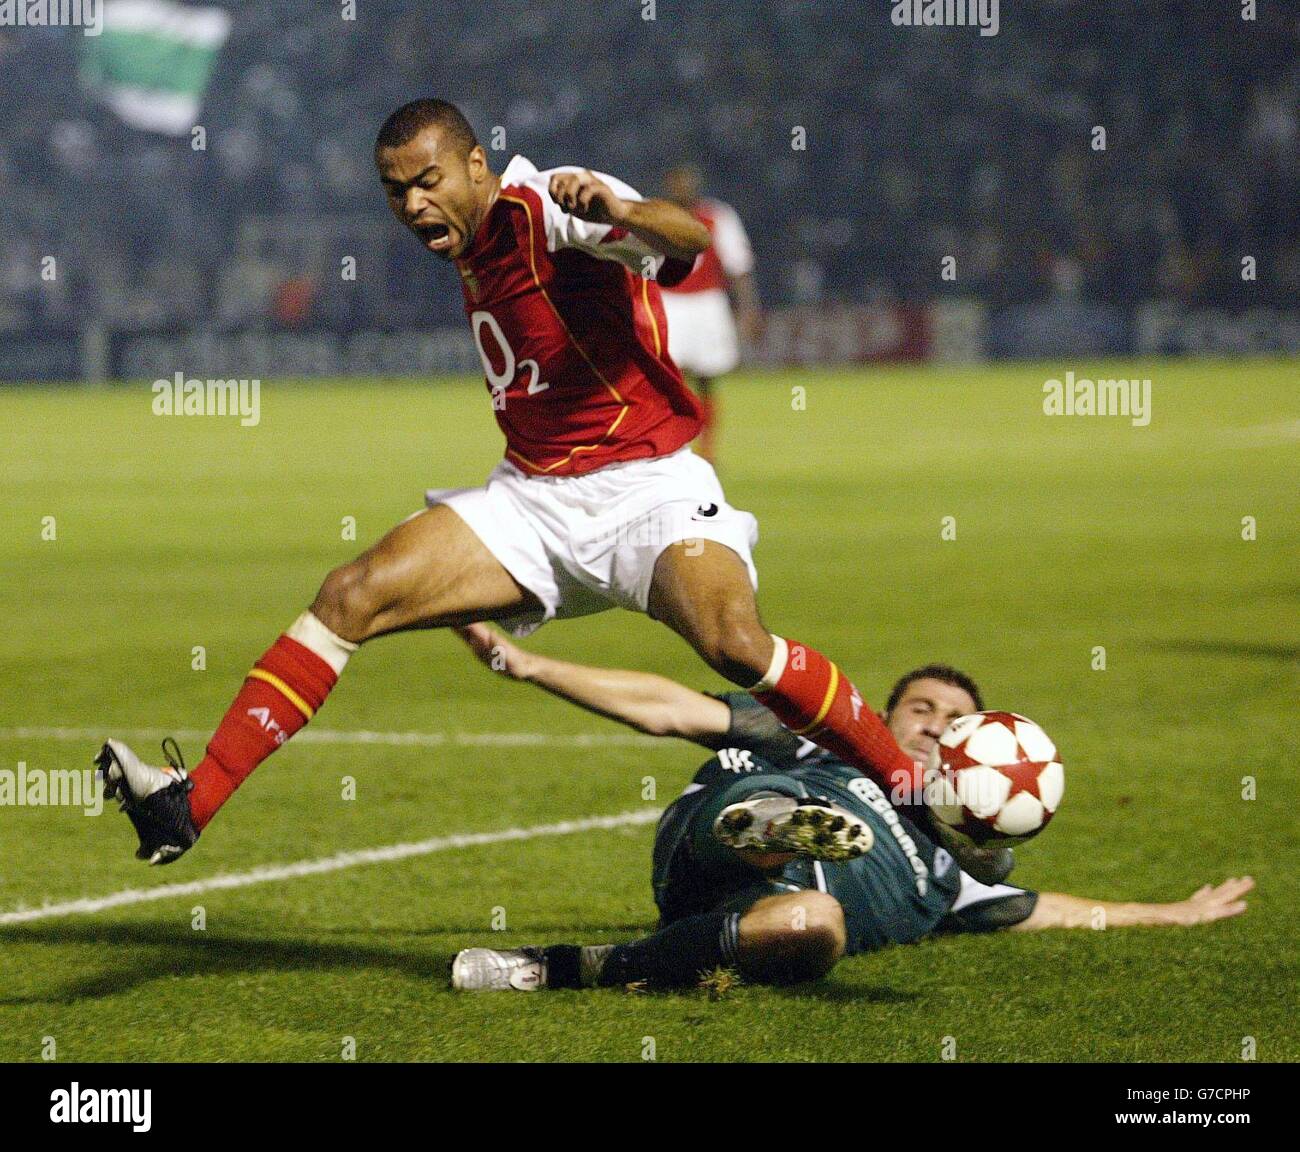 Ashley Cole, d'Arsenal (à gauche), saute sur l'attaque de Yannis Goumas de Panathinaikos lors du match E de la Ligue des champions de l'UEFA au stade Apostolos Nikolaidis, à Athènes, en Grèce. Banque D'Images